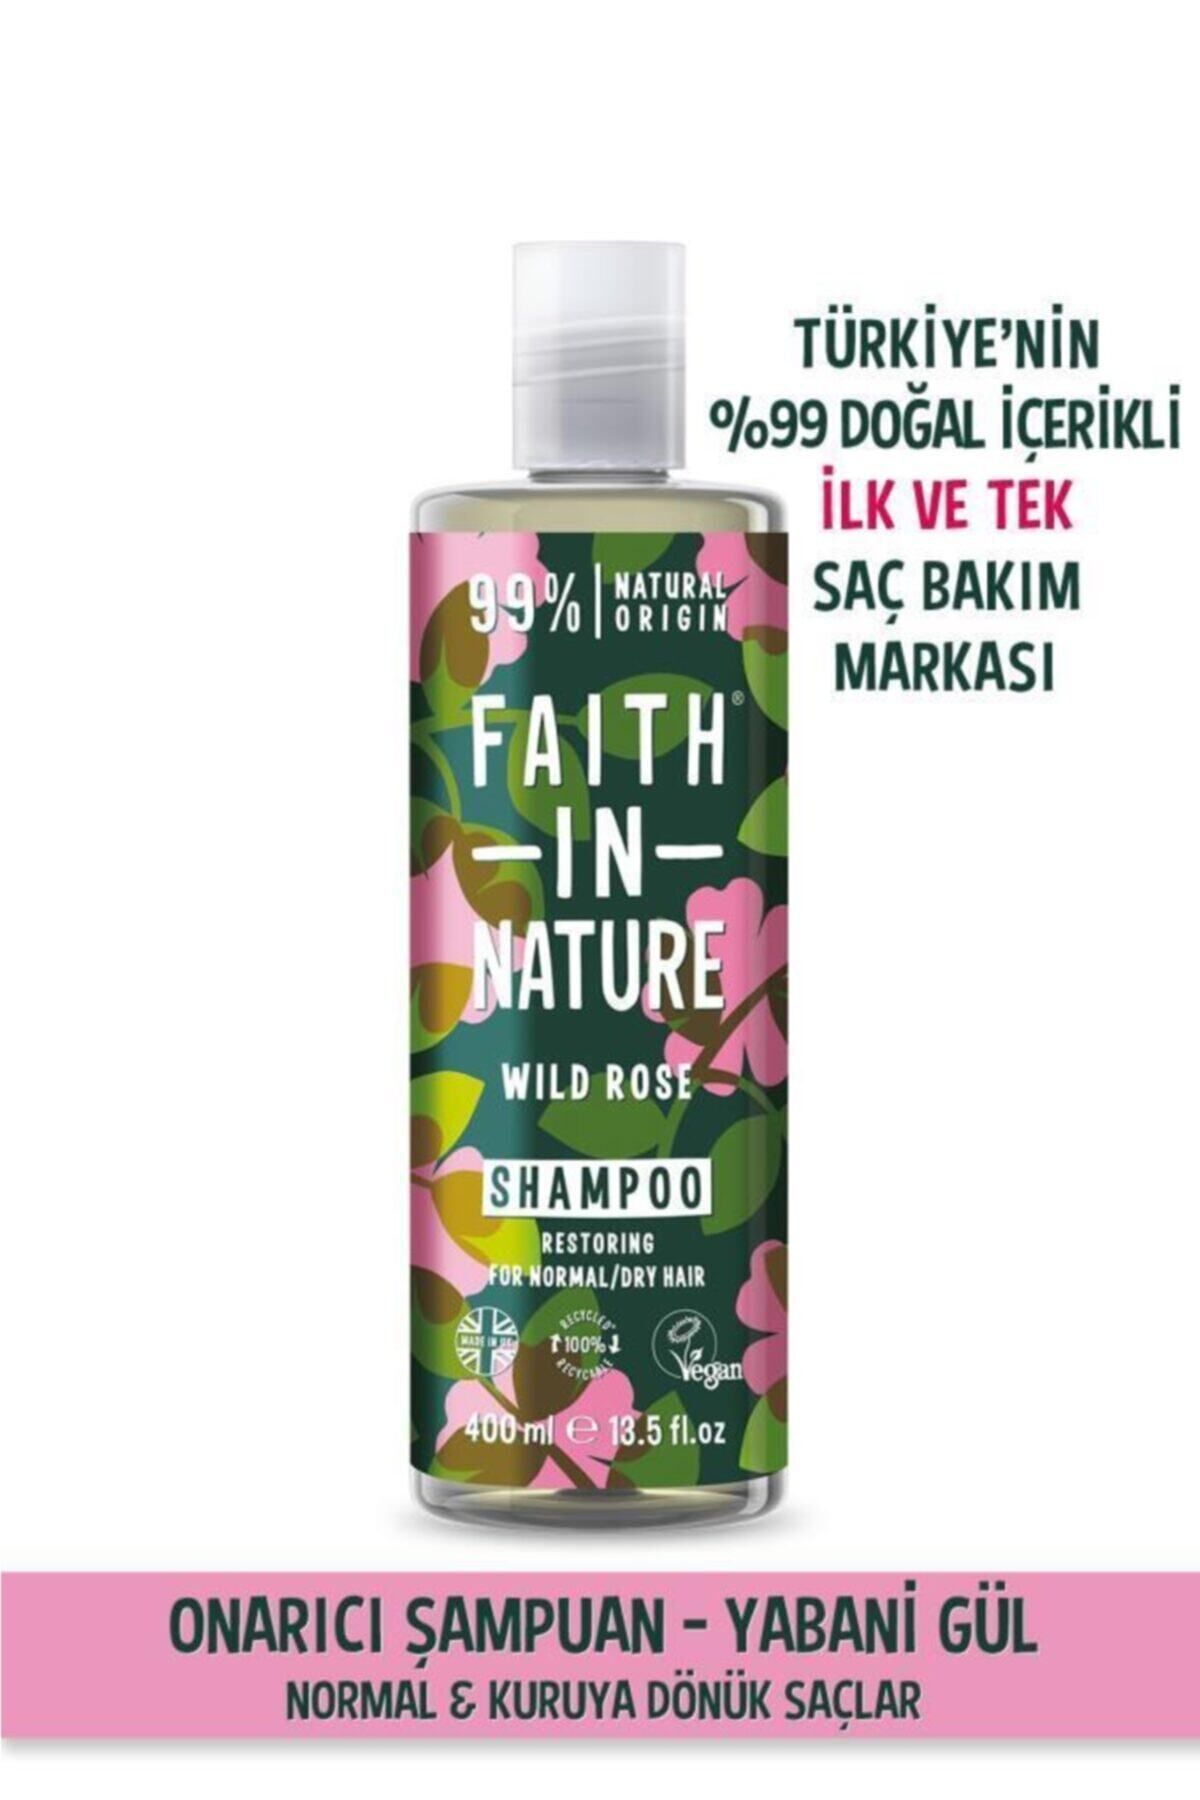 Faith In Nature %99 Doğal Onarıcı Şampuan Yabani Gül Normal&Kuruya Dönük Saçlar İçin